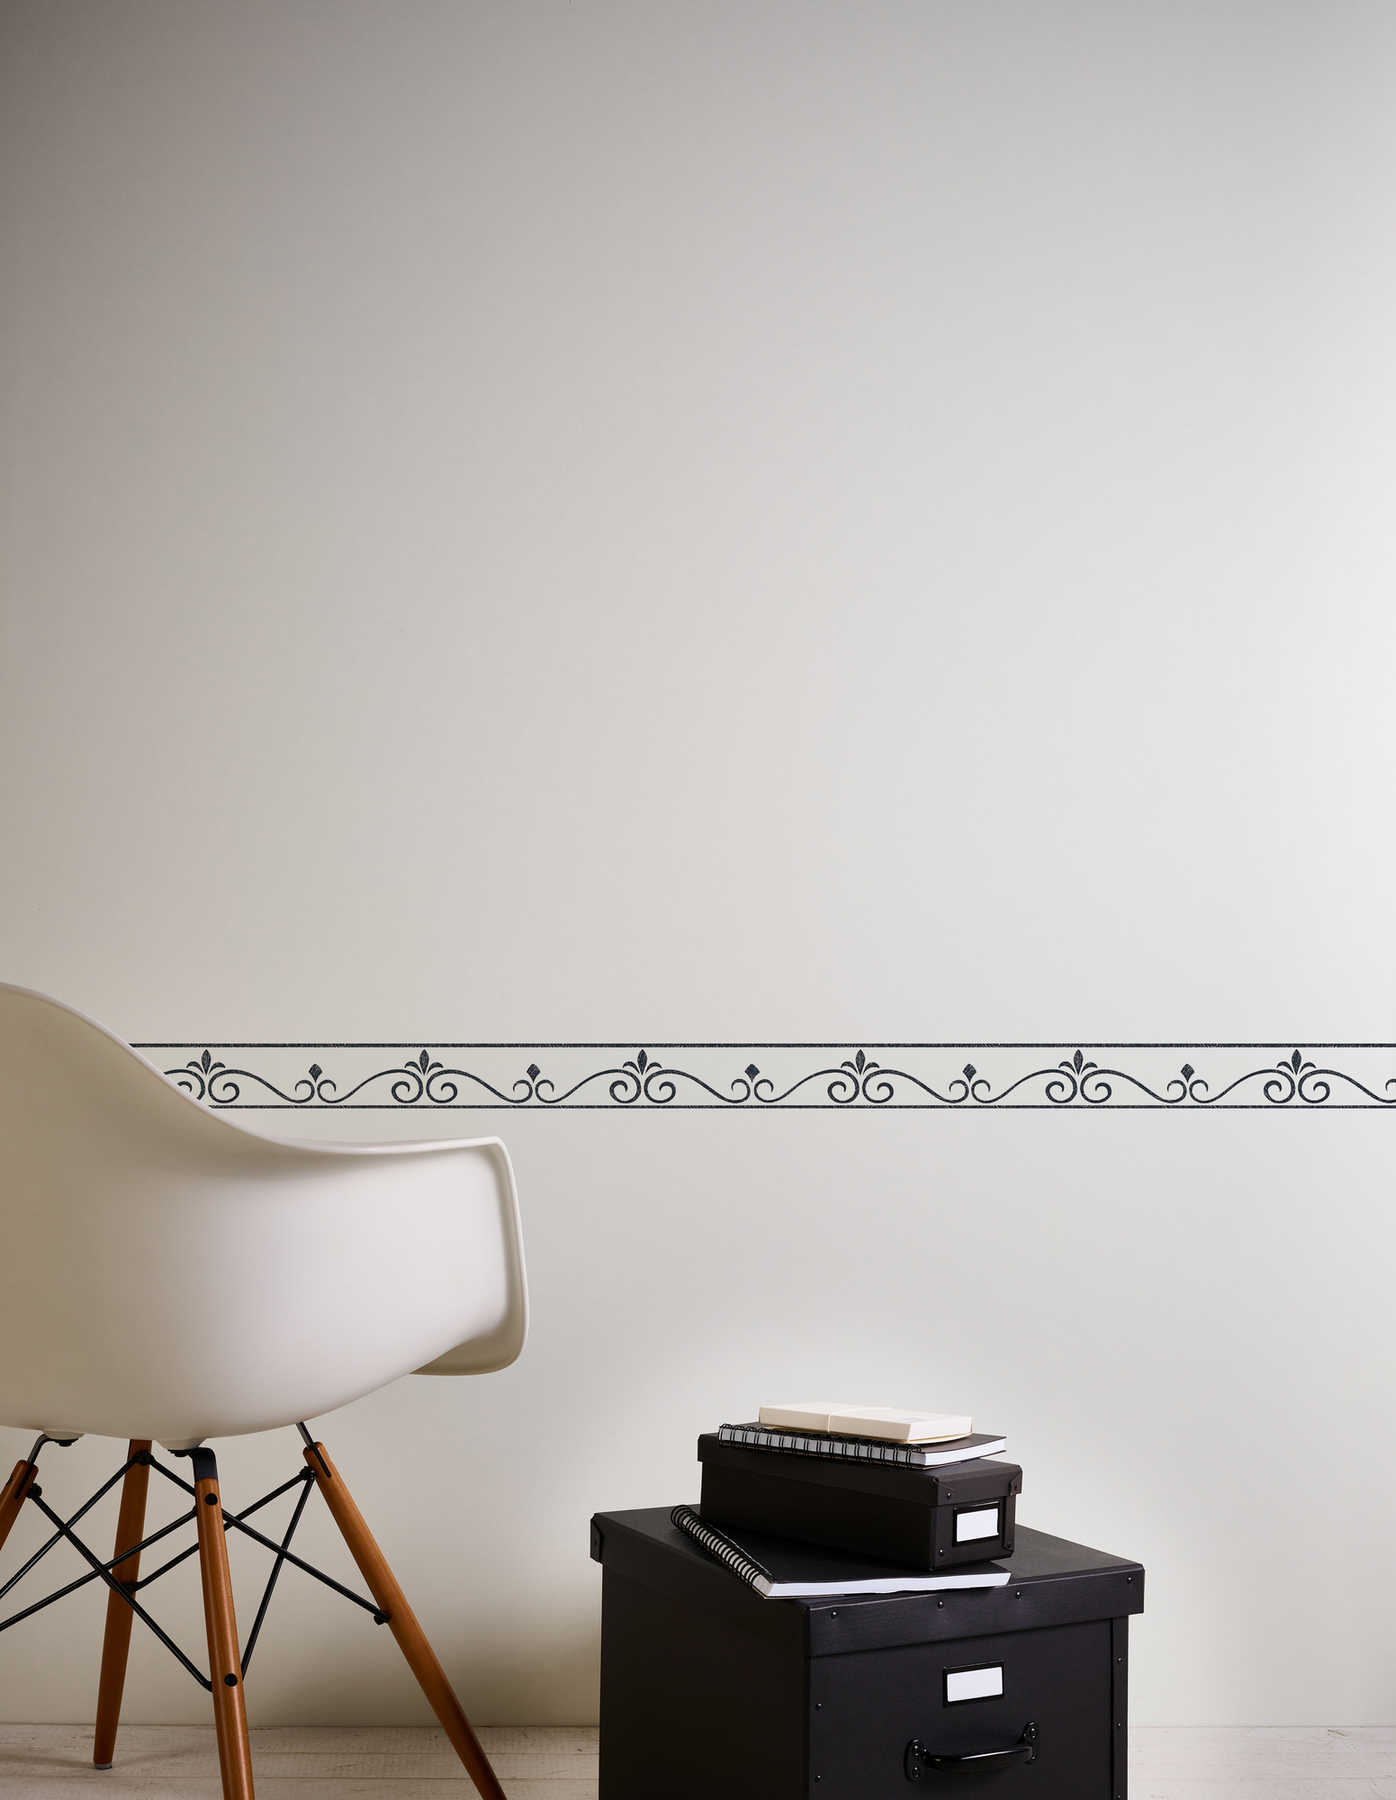             Zwart-witte rand met filigraan decoratief patroon
        